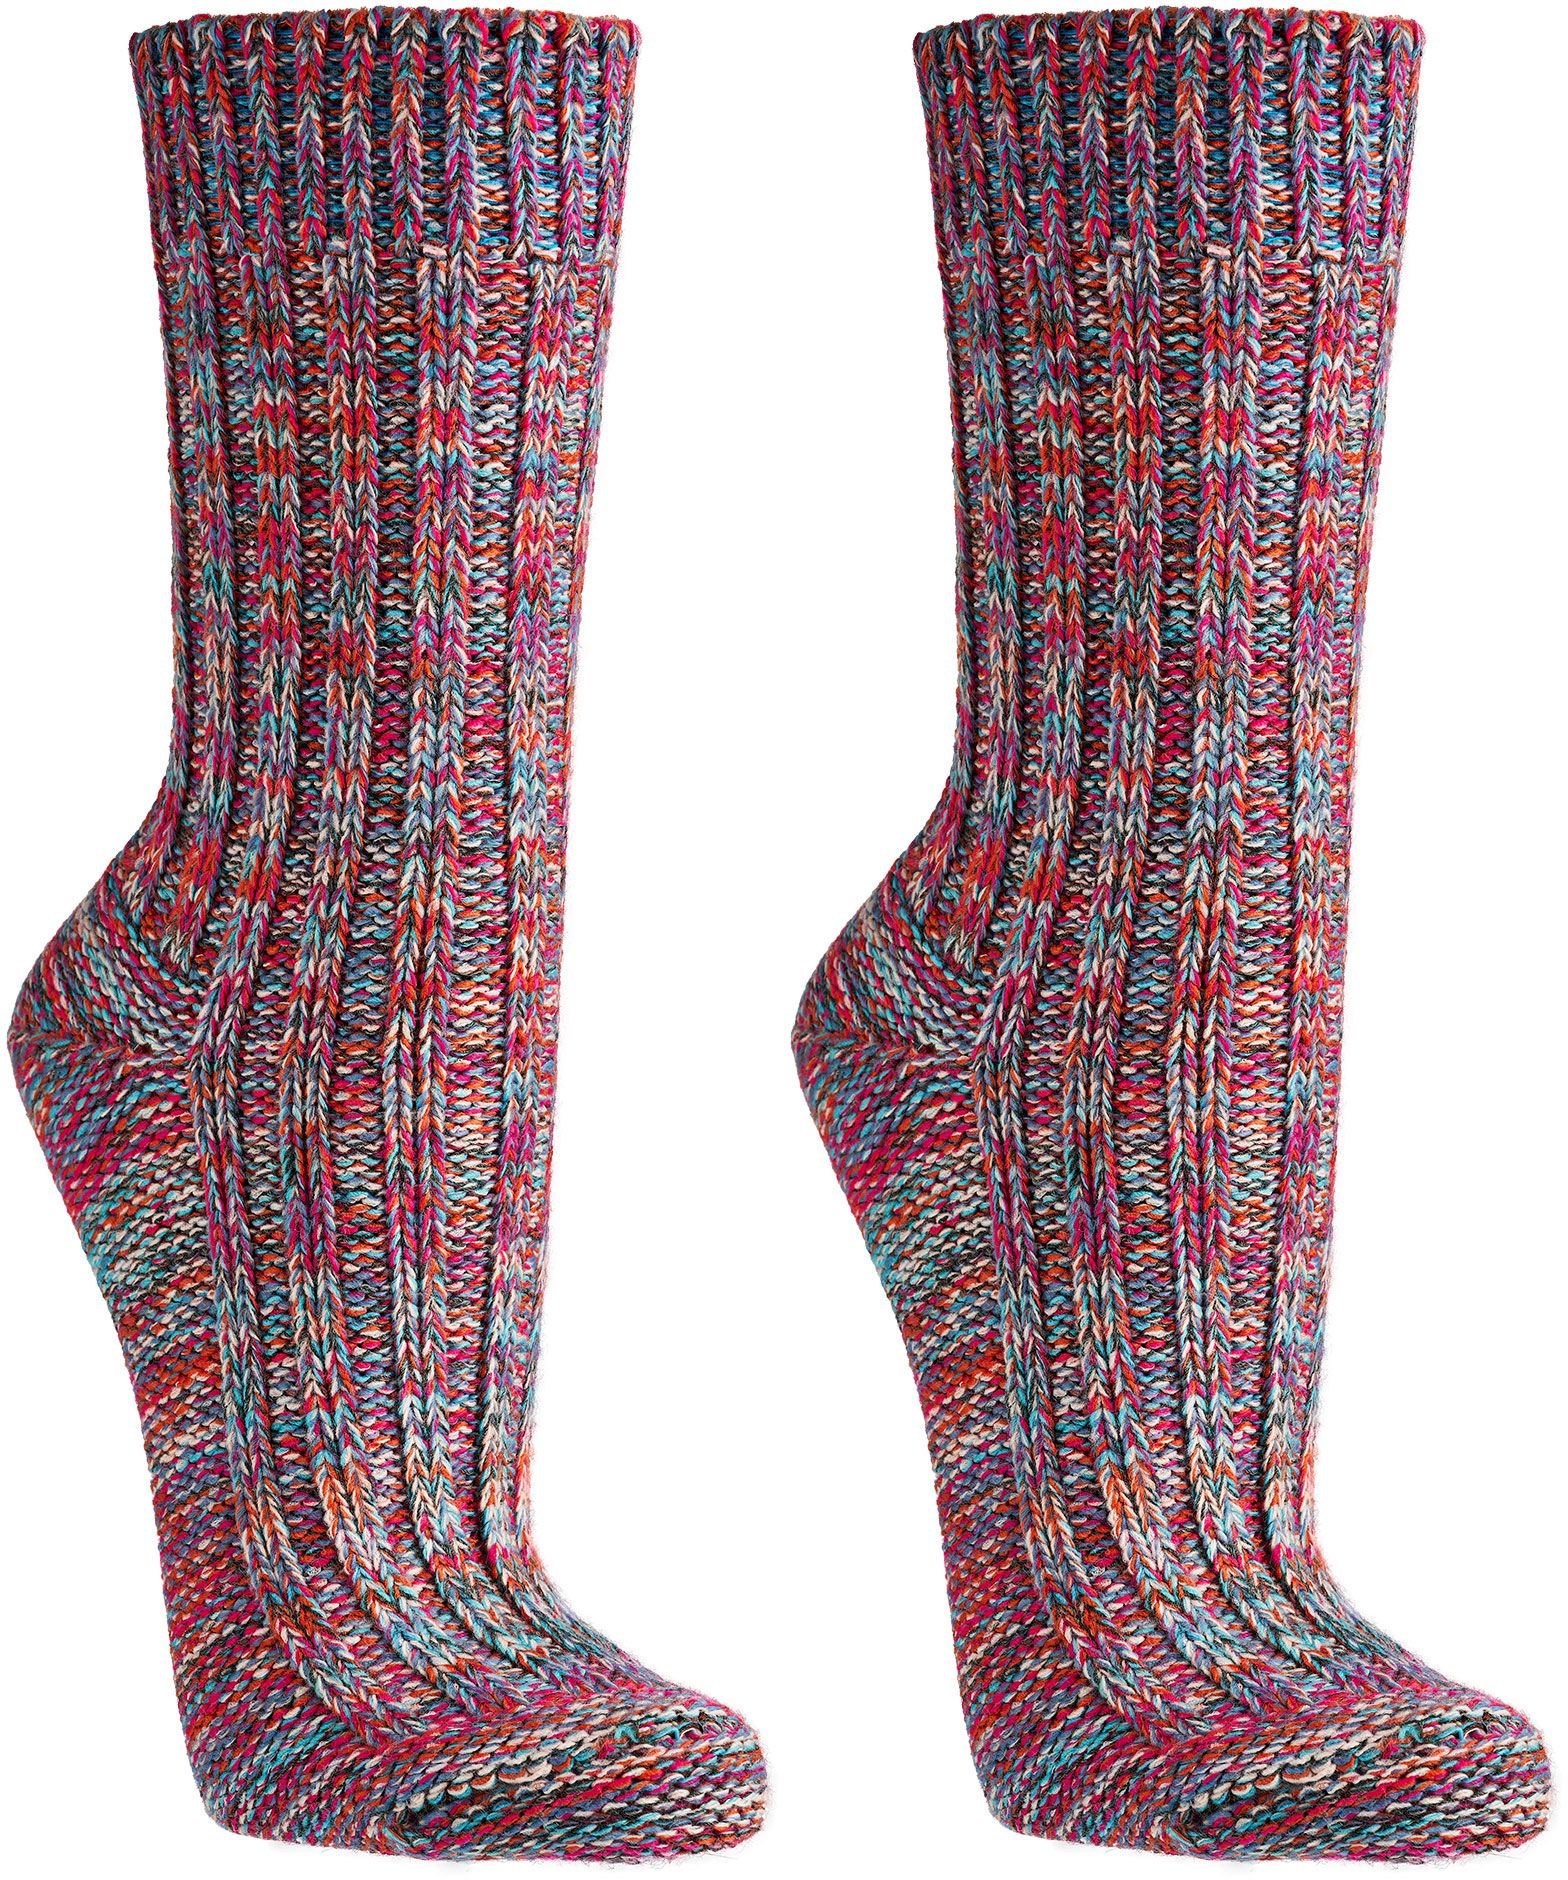  Multi Colour-Baumwoll-Socken  für Teenager, Damen und Herren schöne dicke Qualität   3 Paar/ 1 Farbe